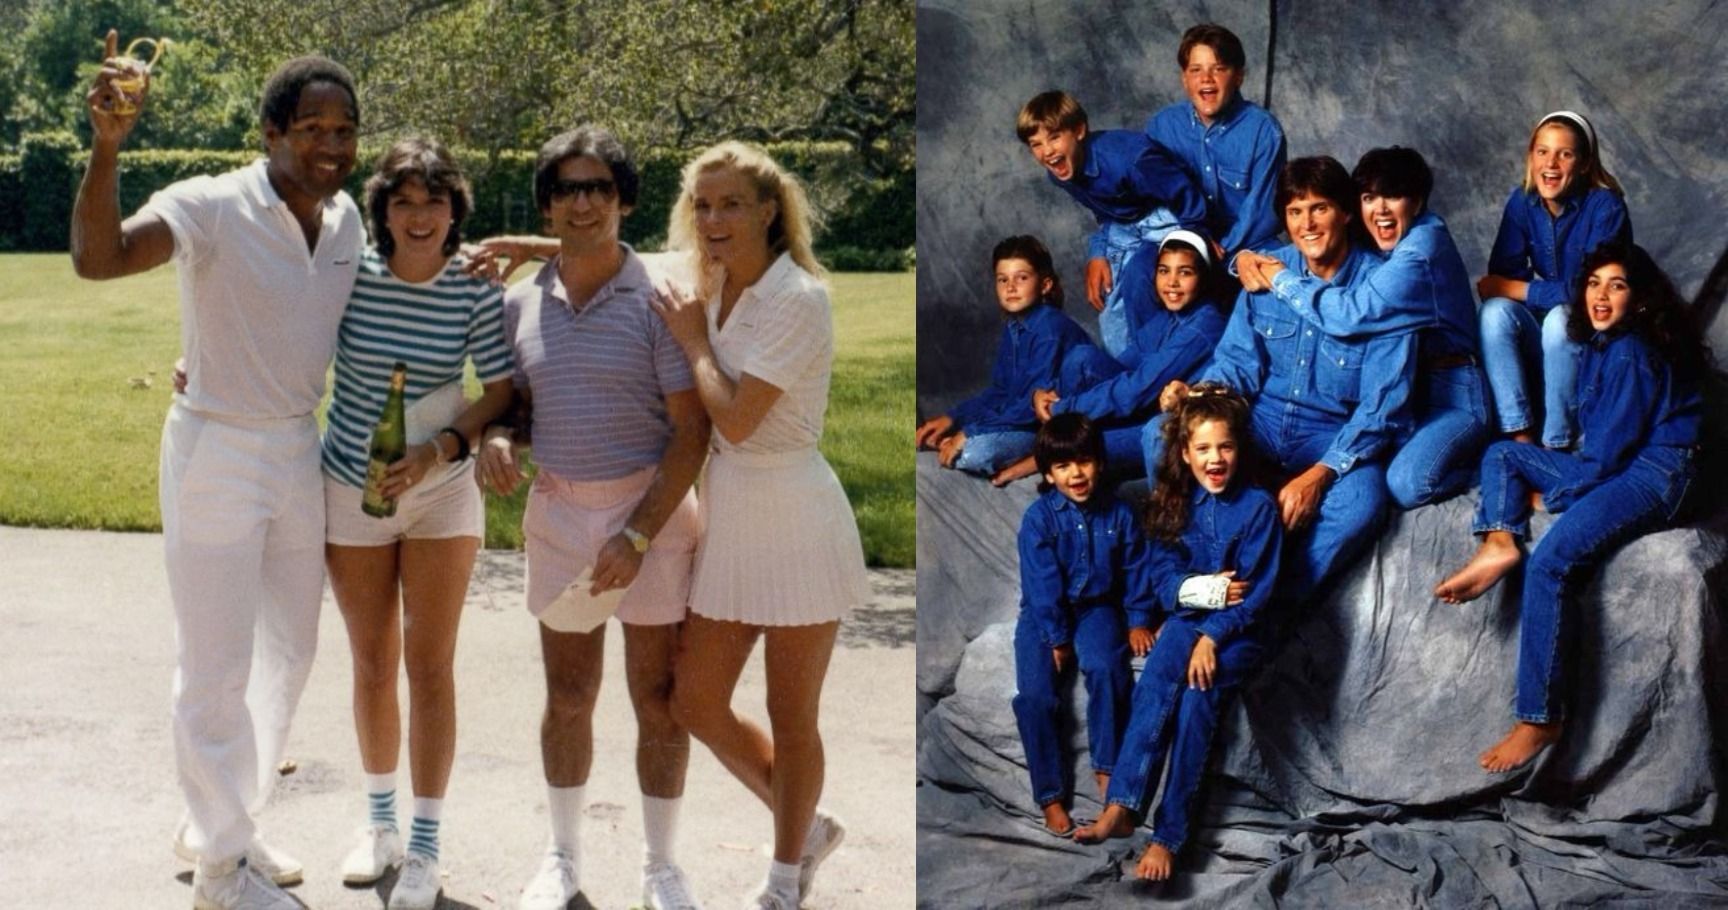 15 fotos de família Kardashian estranhas que deveriam permanecer no passado